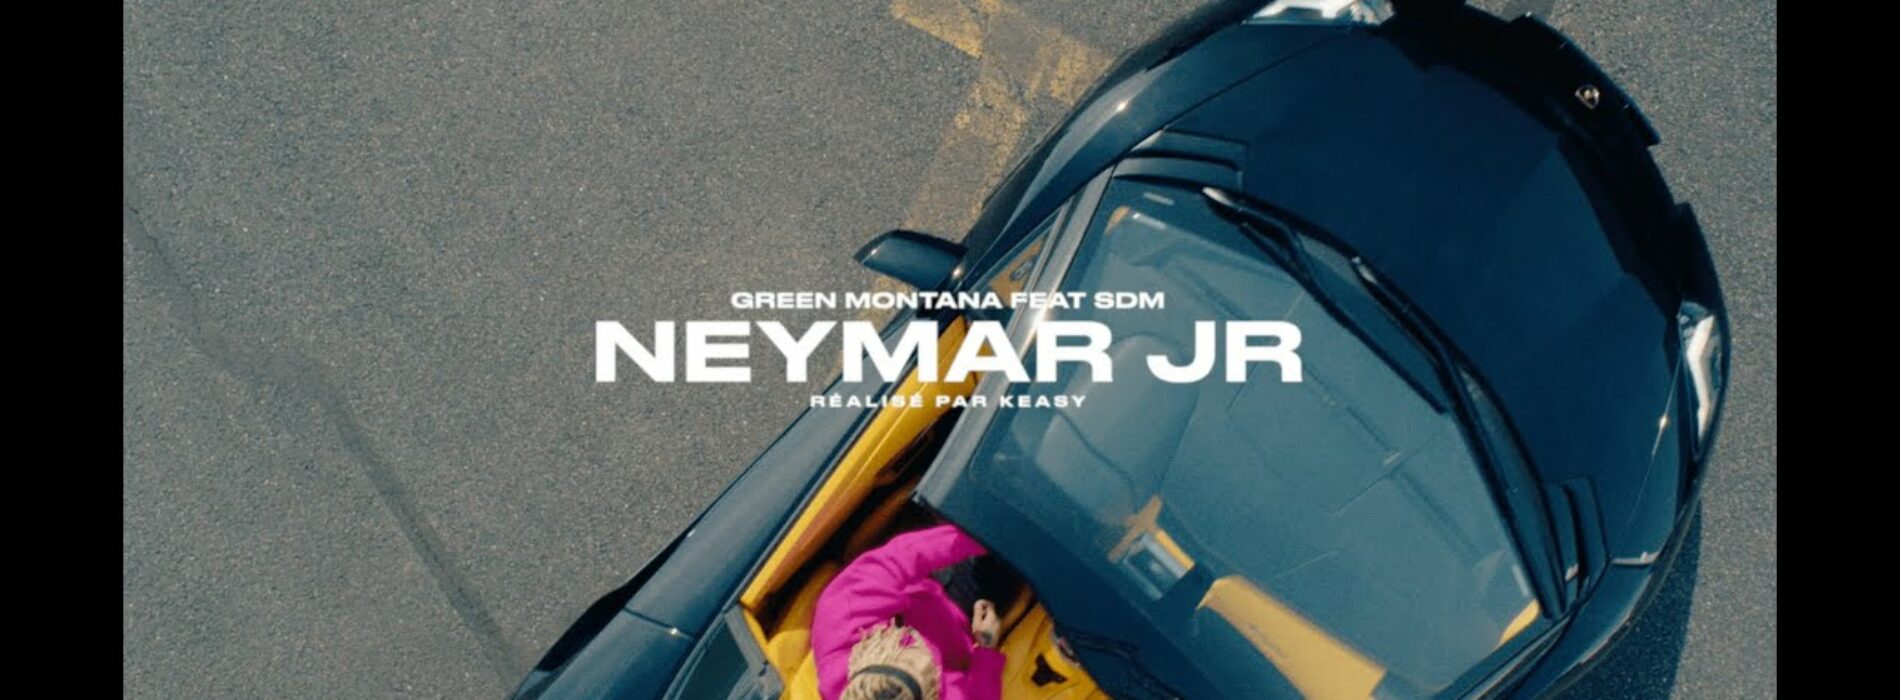 Green Montana feat SDM – « Neymar jr » (clip officiel) – Avril 2022